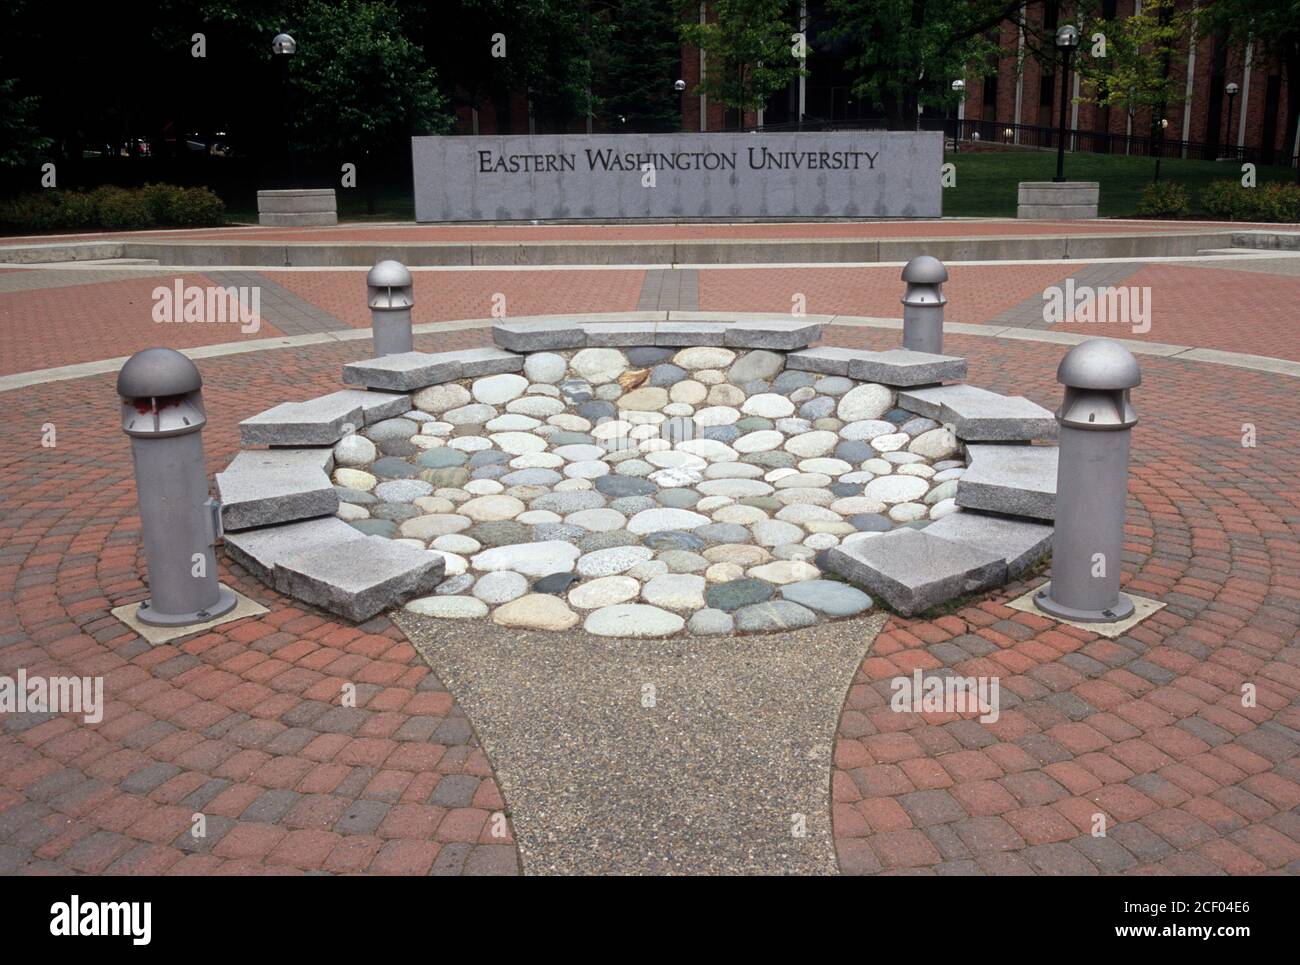 Eastern Washington University, Cheney, Washington Stock Photo